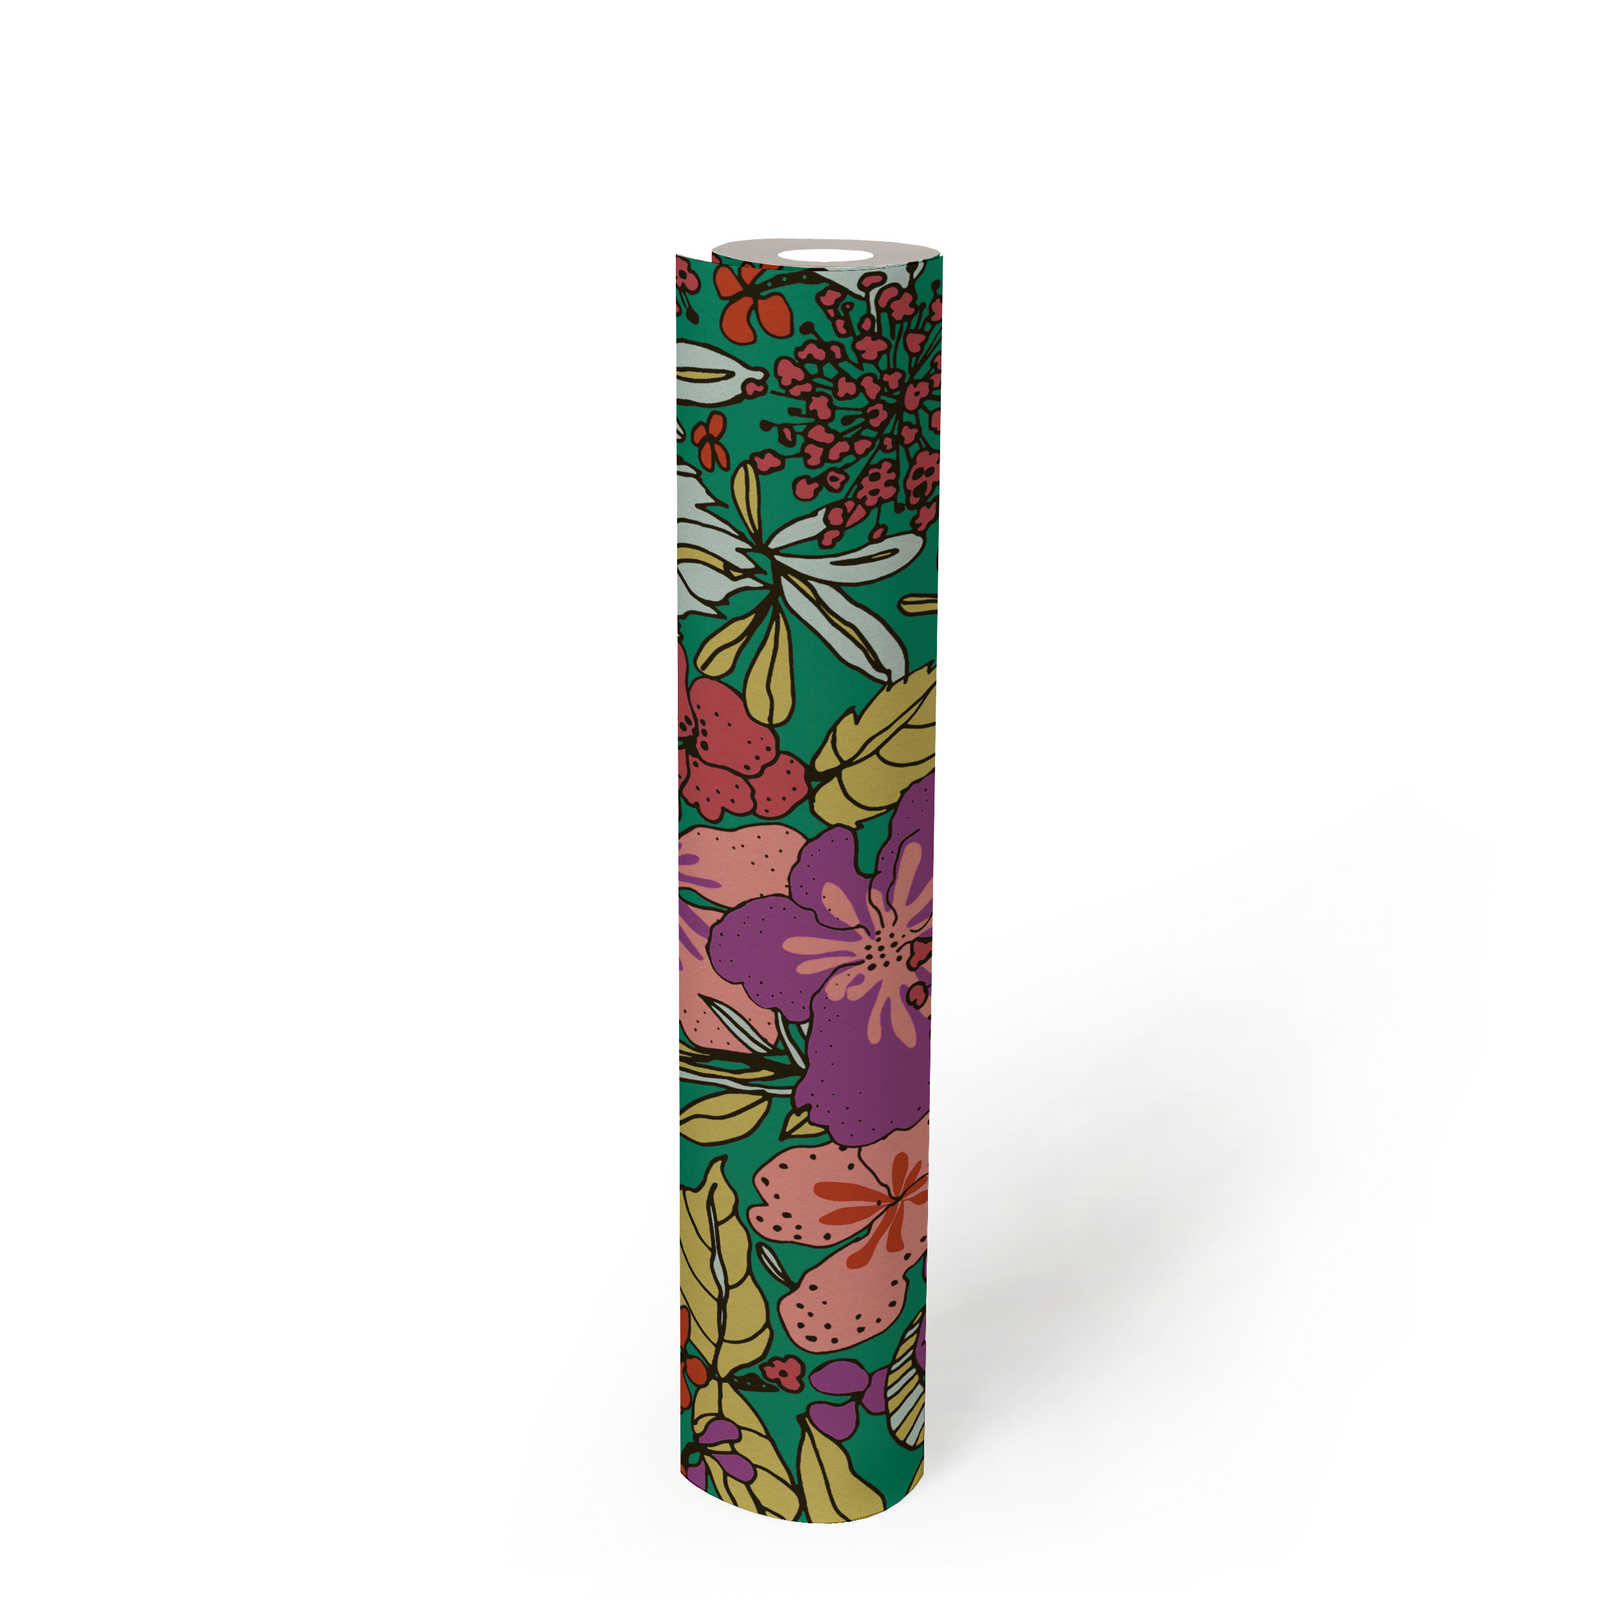             Papier peint motif floral multicolore style Colour Block - multicolore, vert, rouge
        